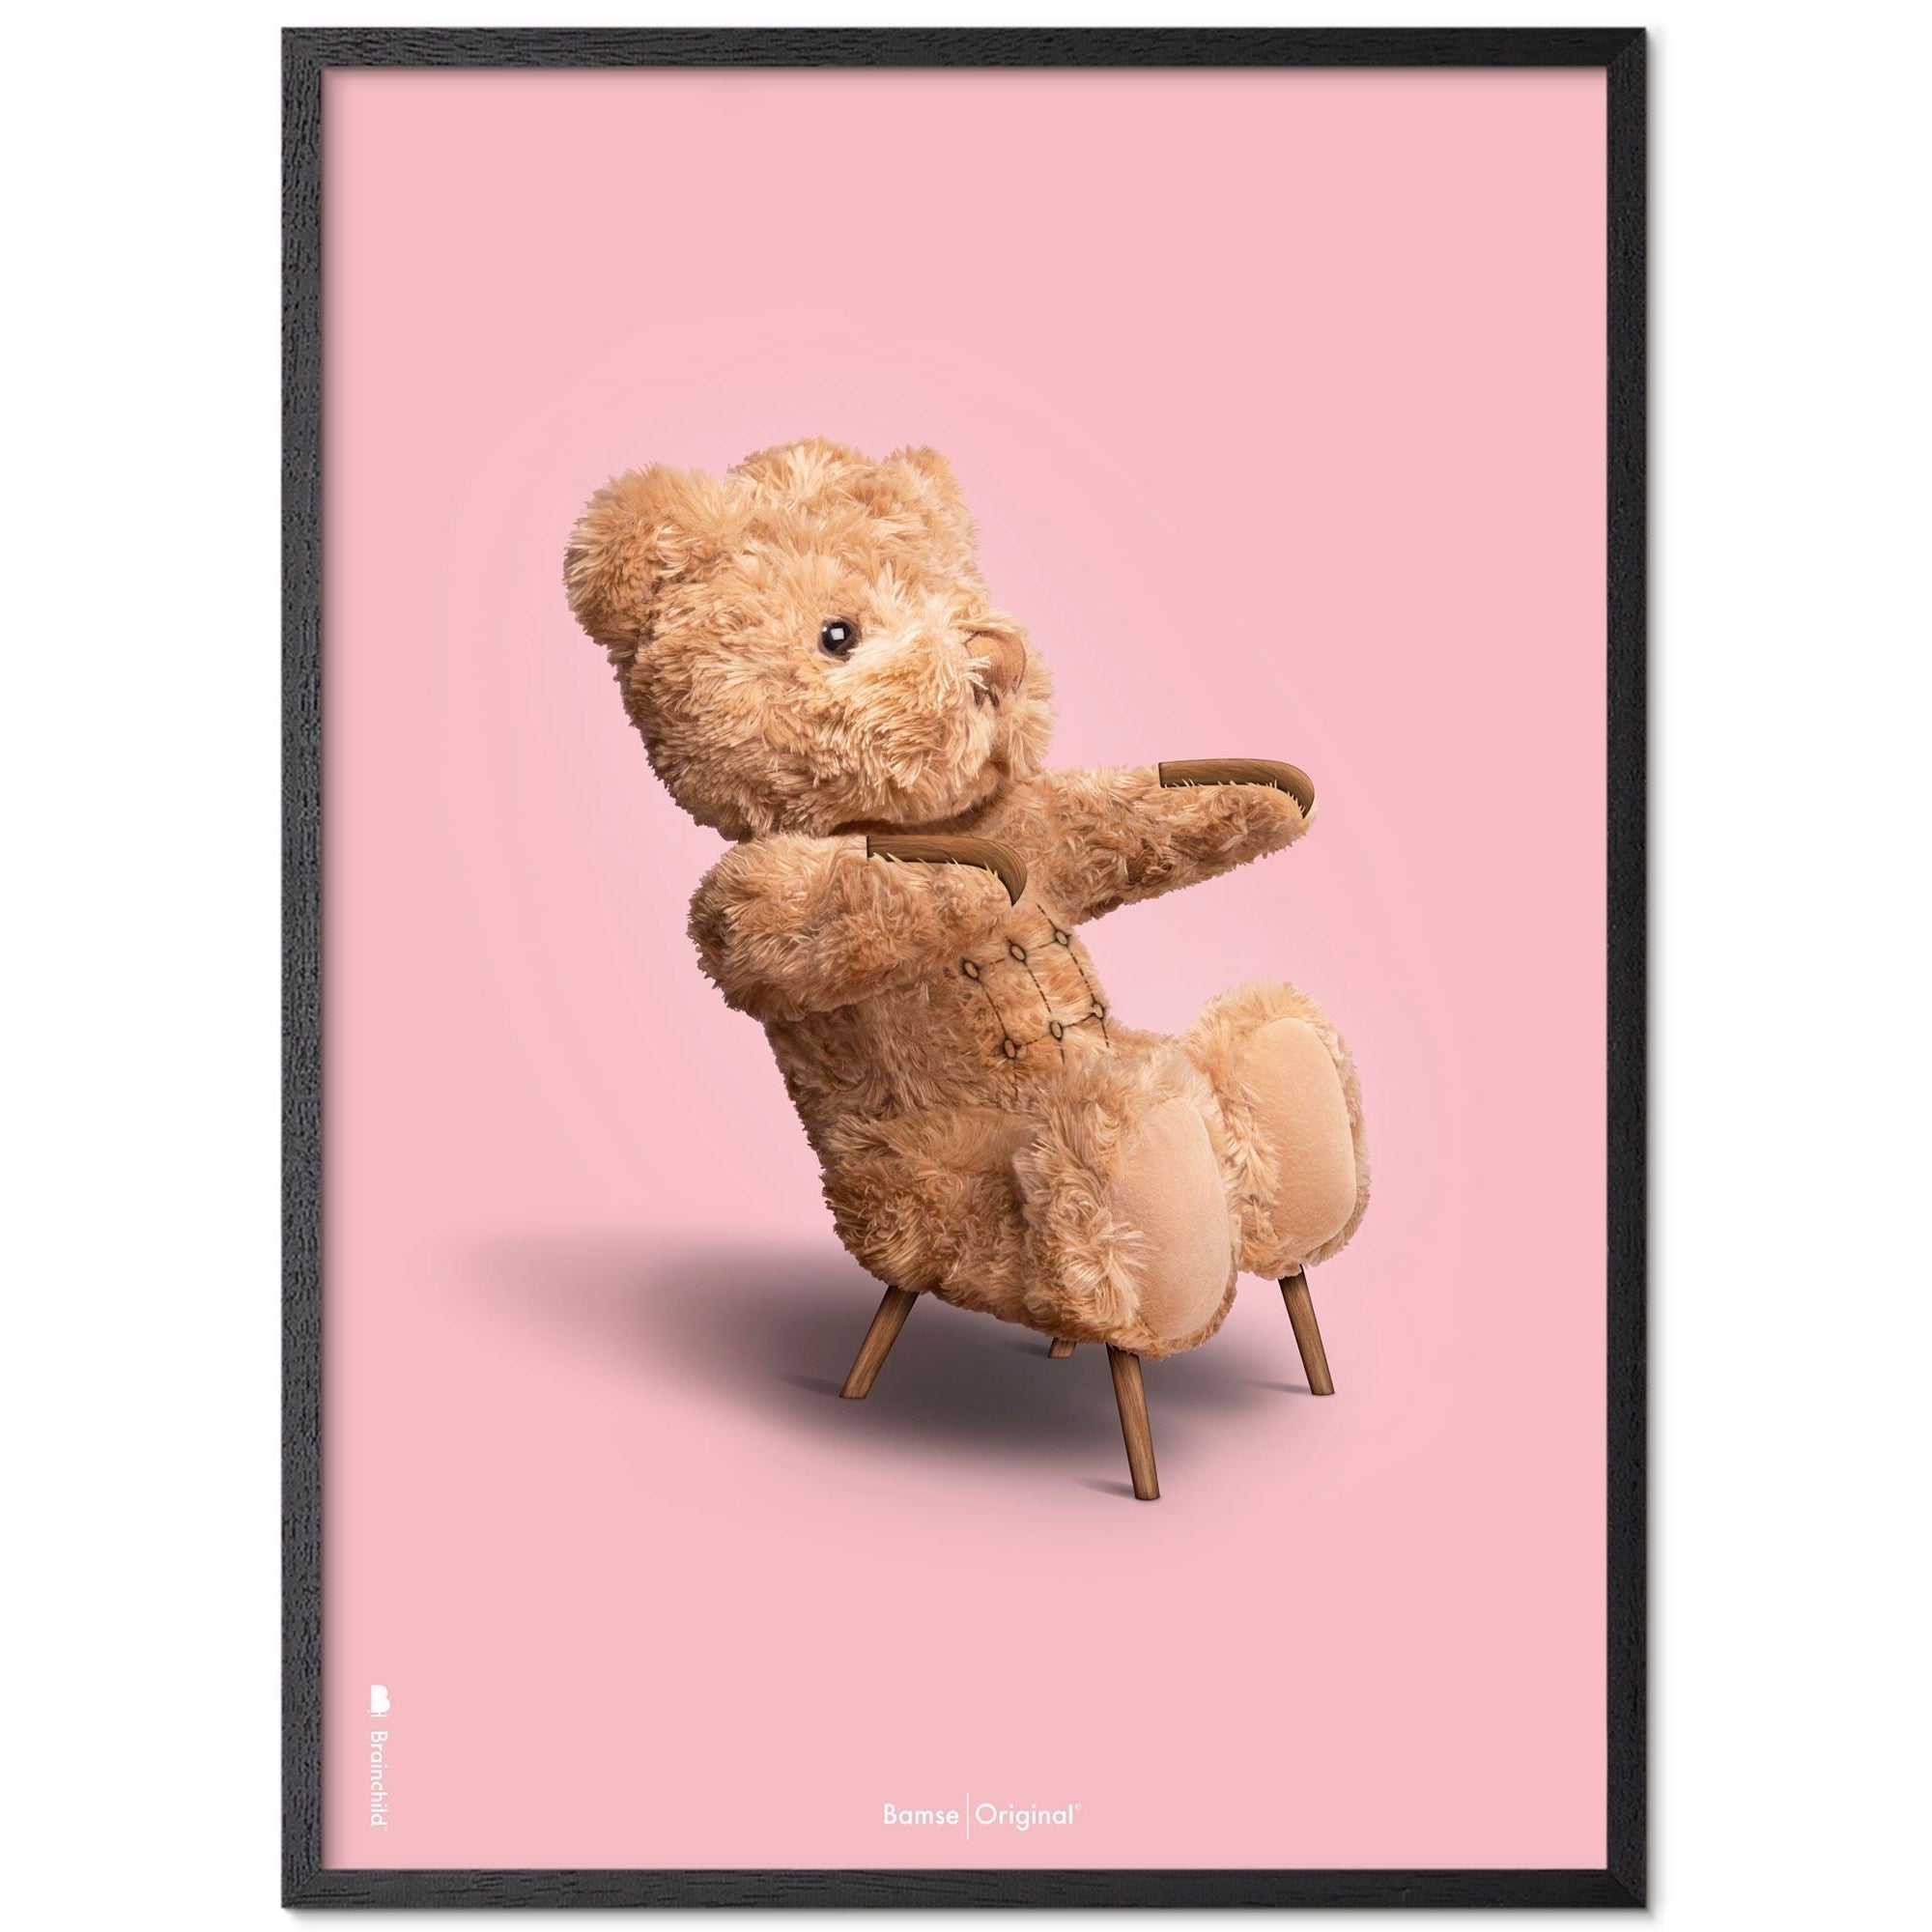 Marco de póster clásico de oso de peluche de creación hecha de madera lacada negra 30x40 cm, fondo rosa